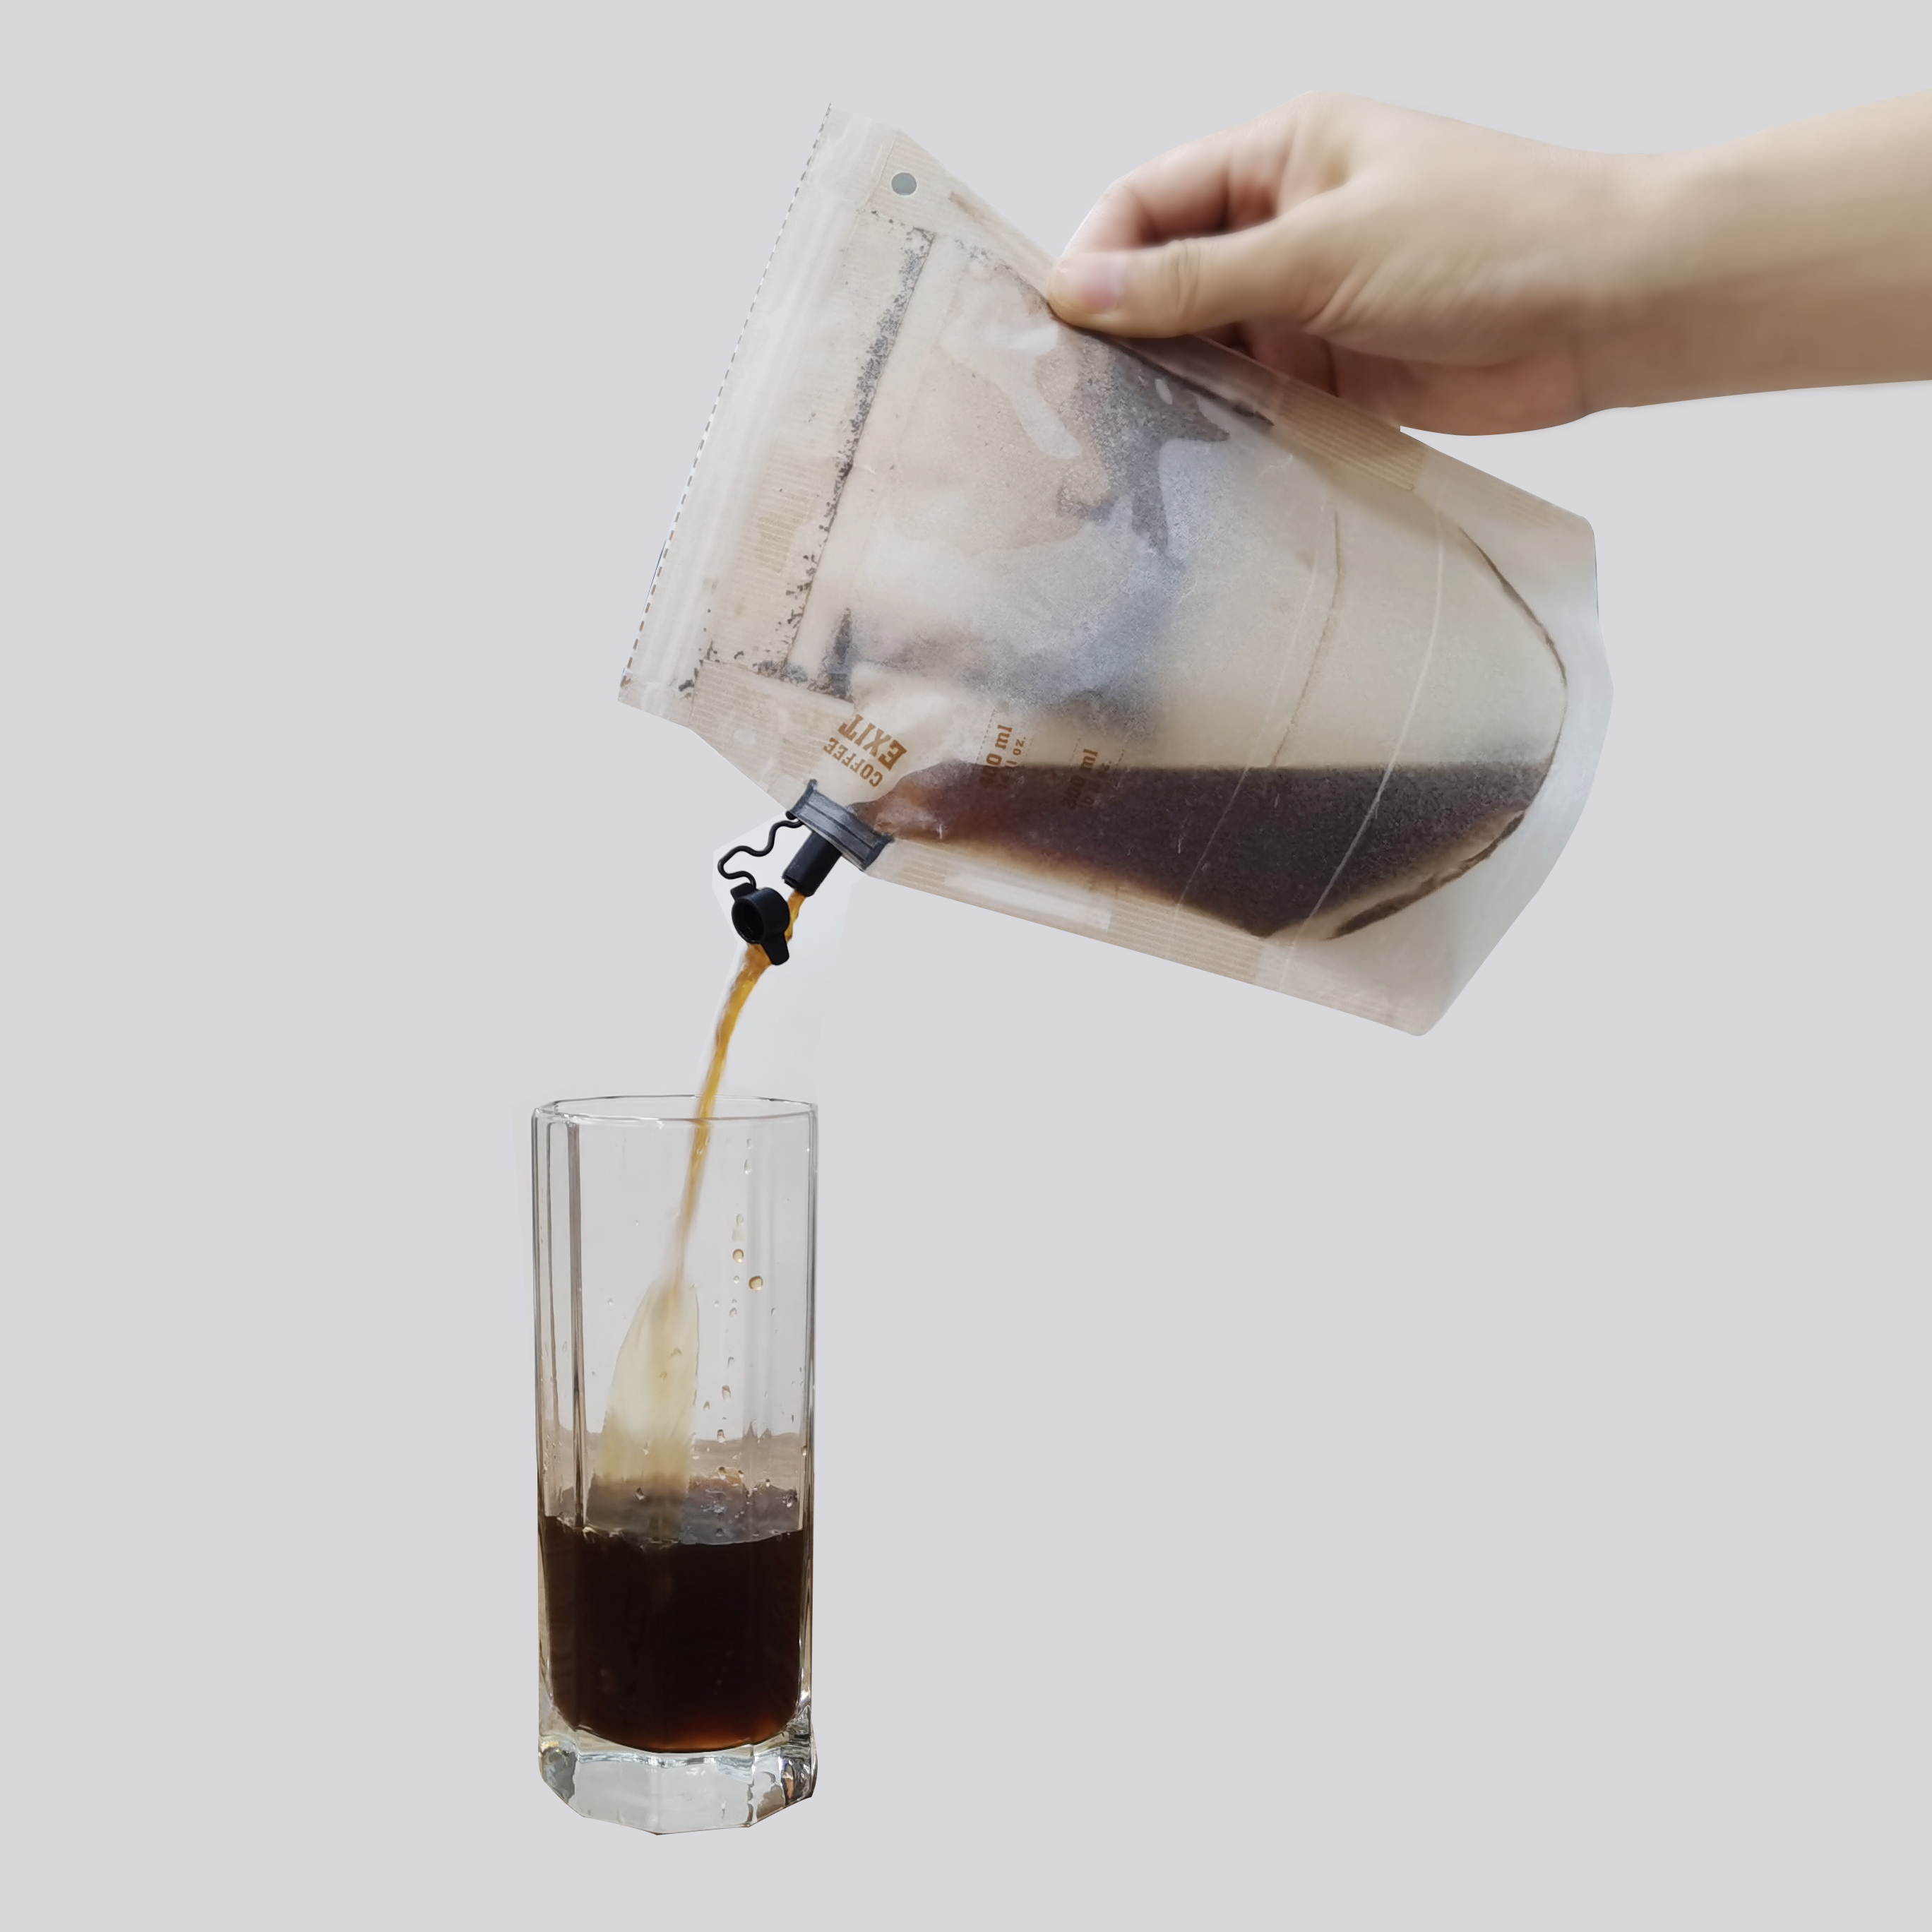 Wiederverwendbarer Filterbeutel für Kaffee- und Teeblätter mit Ausguss